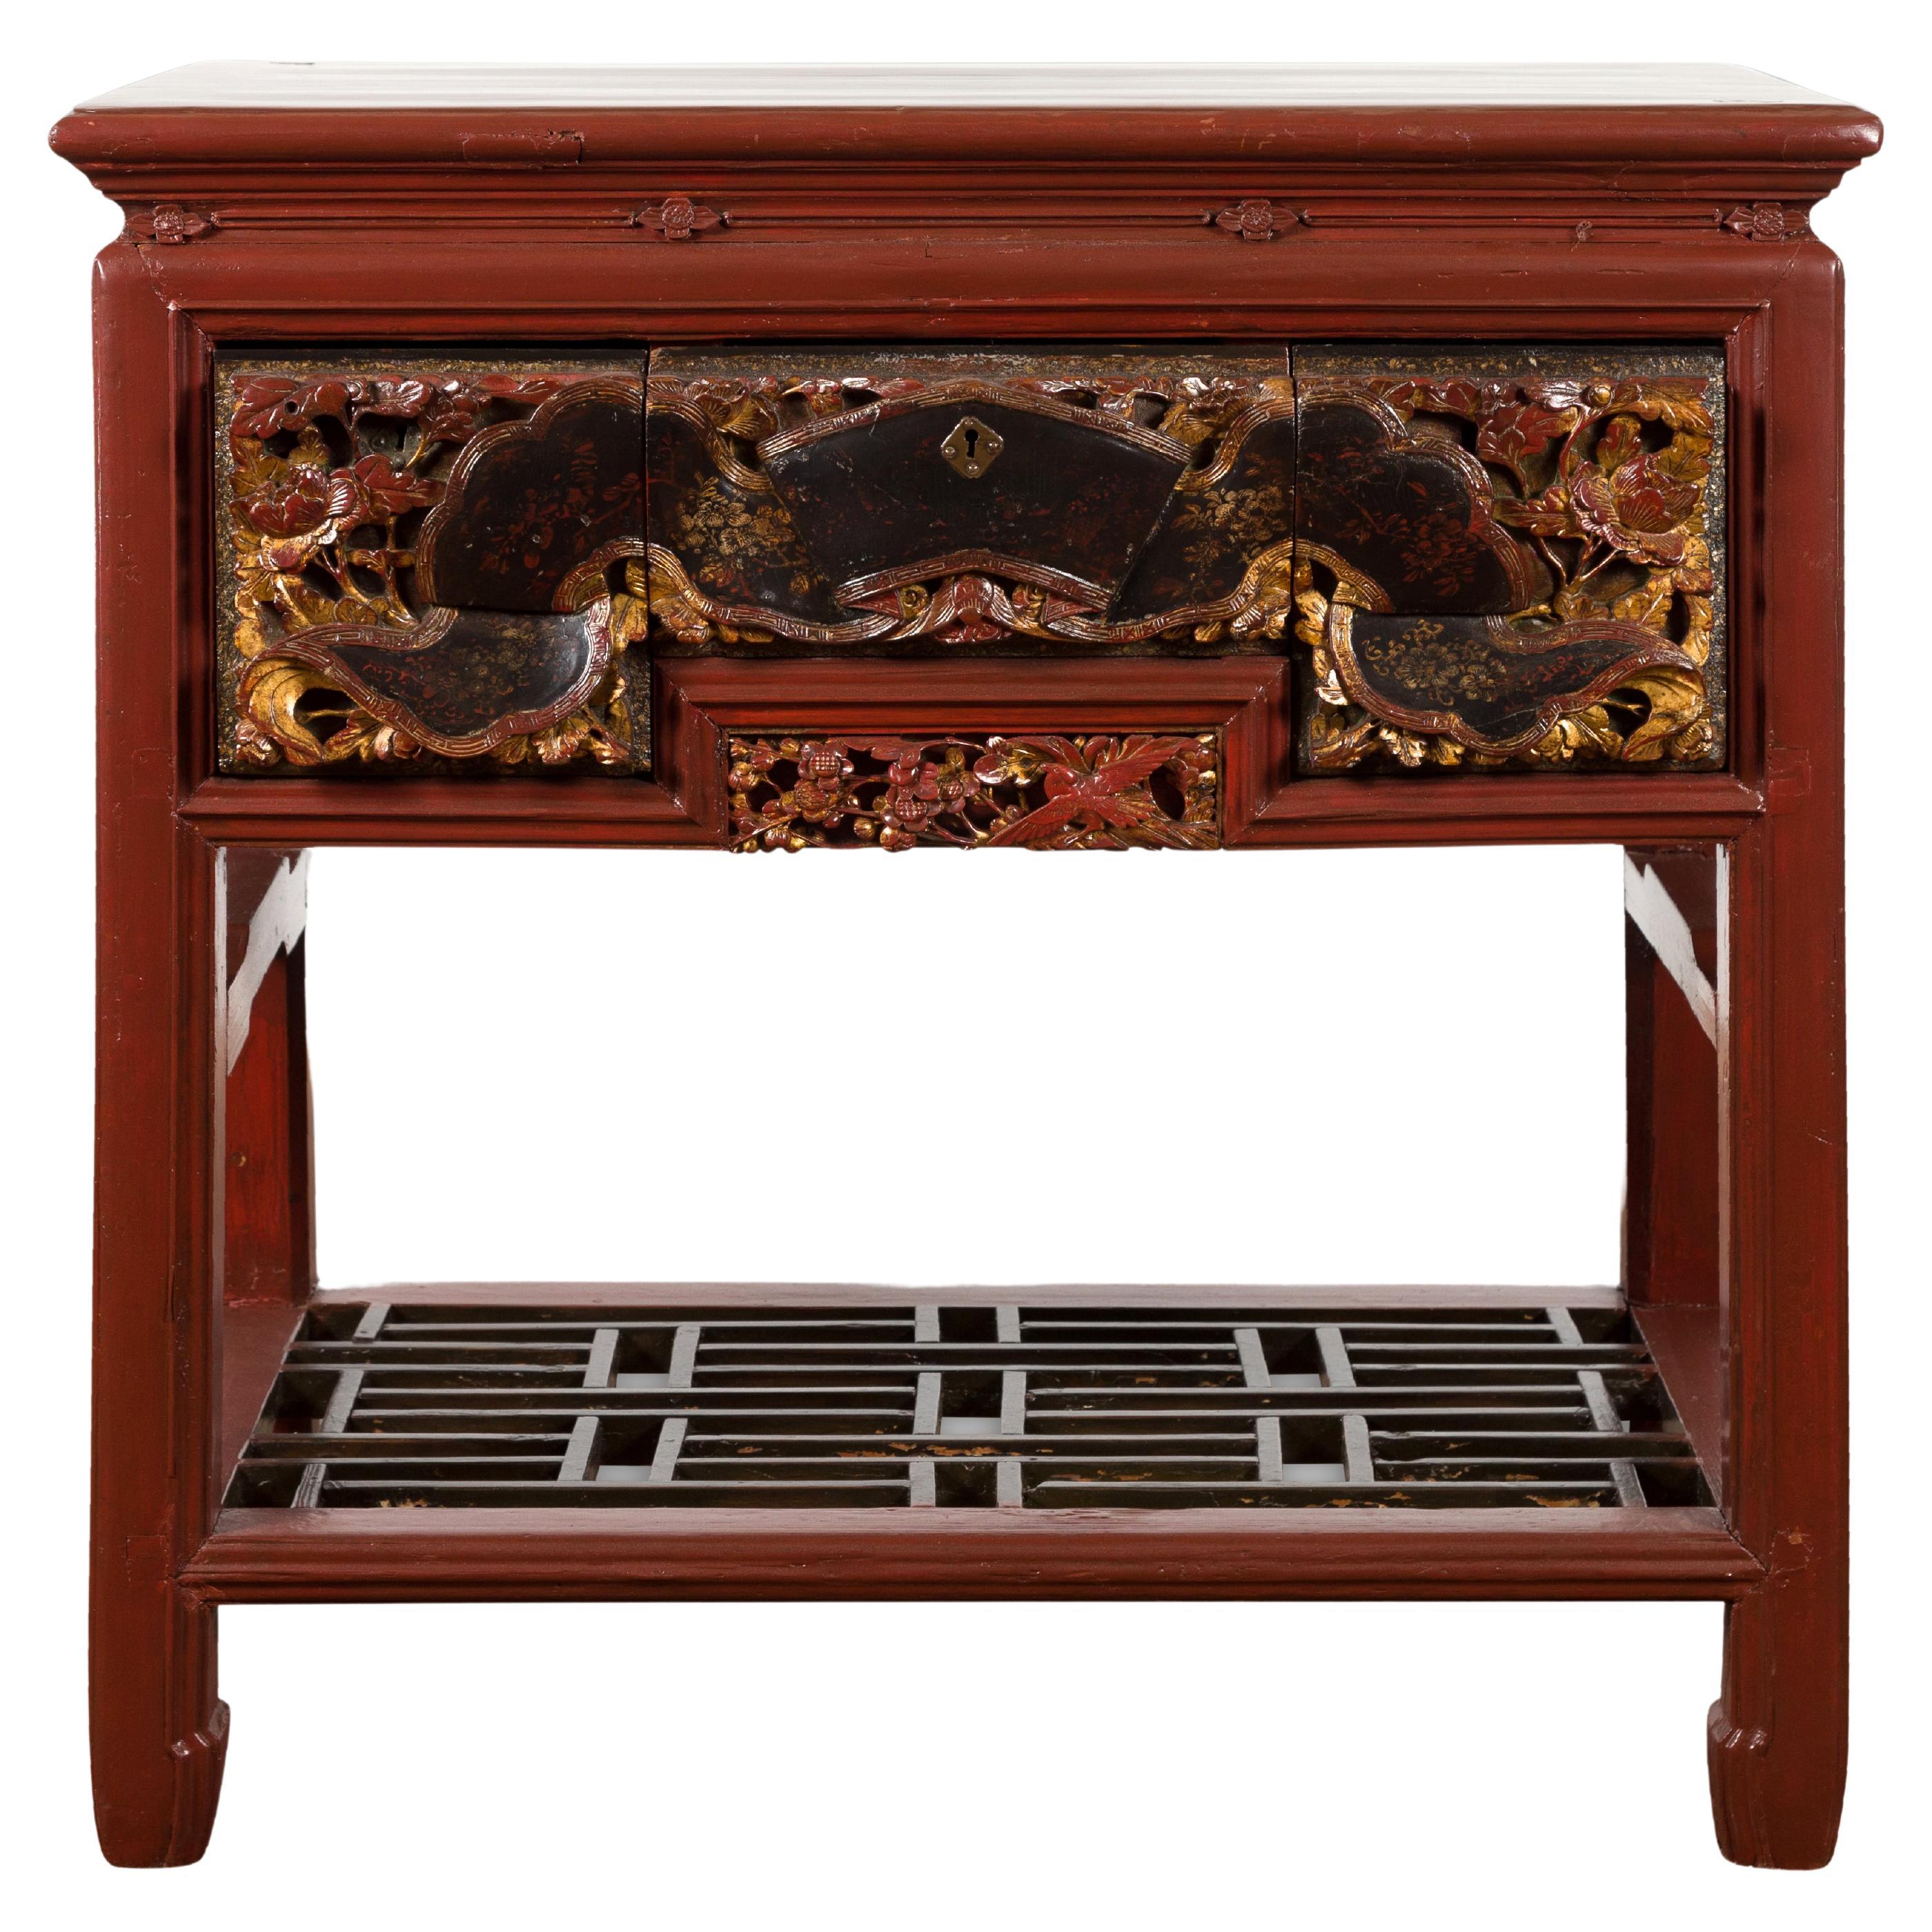 Table console chinoise laquée rouge avec tiroirs sculptés à la main et étagère géométrique